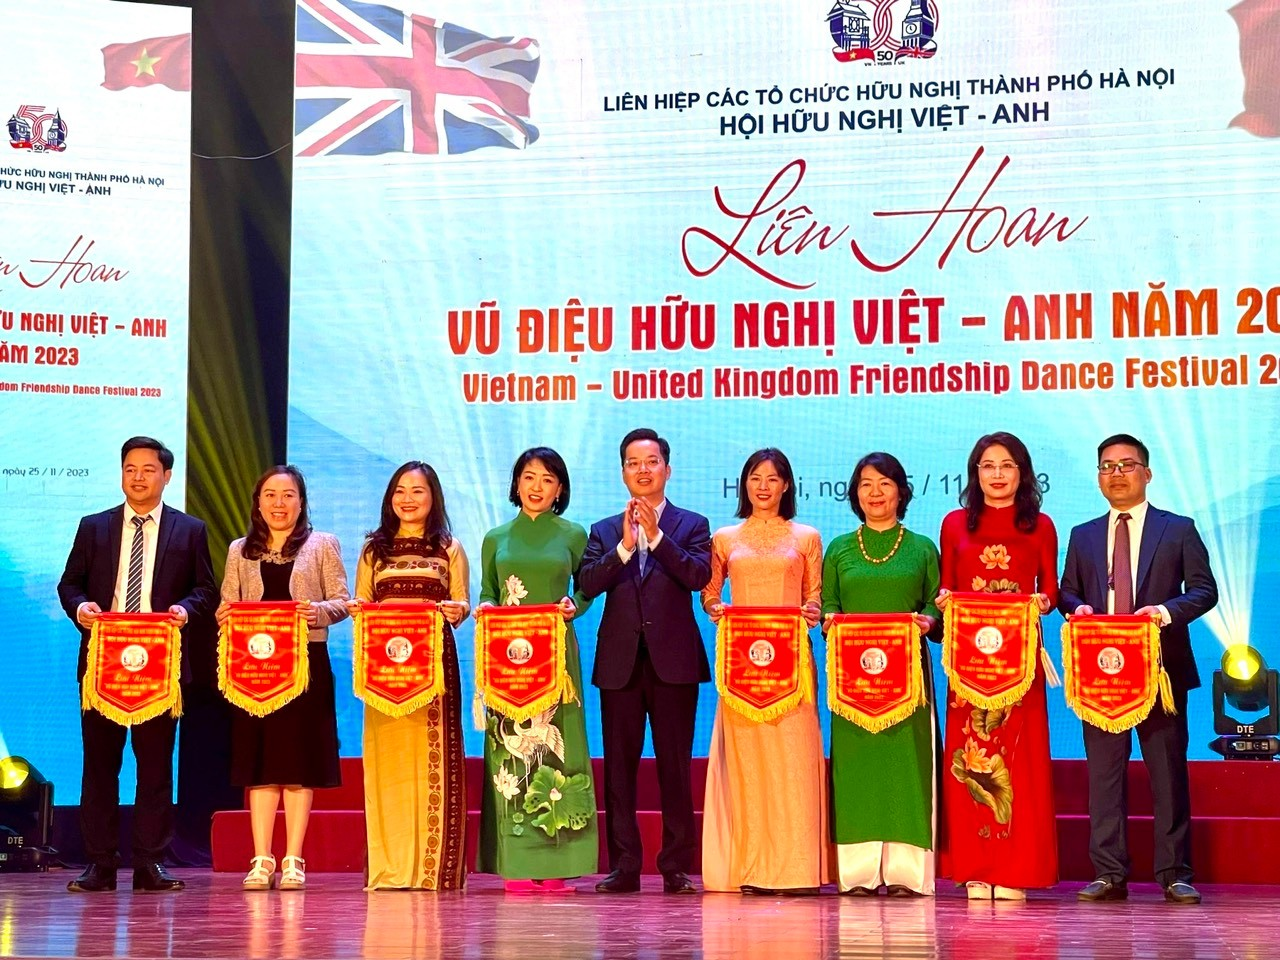 Trường Đại học Thủ đô Hà Nội tham dự Liên hoan Vũ điệu hữu nghị Việt - Anh năm 2023